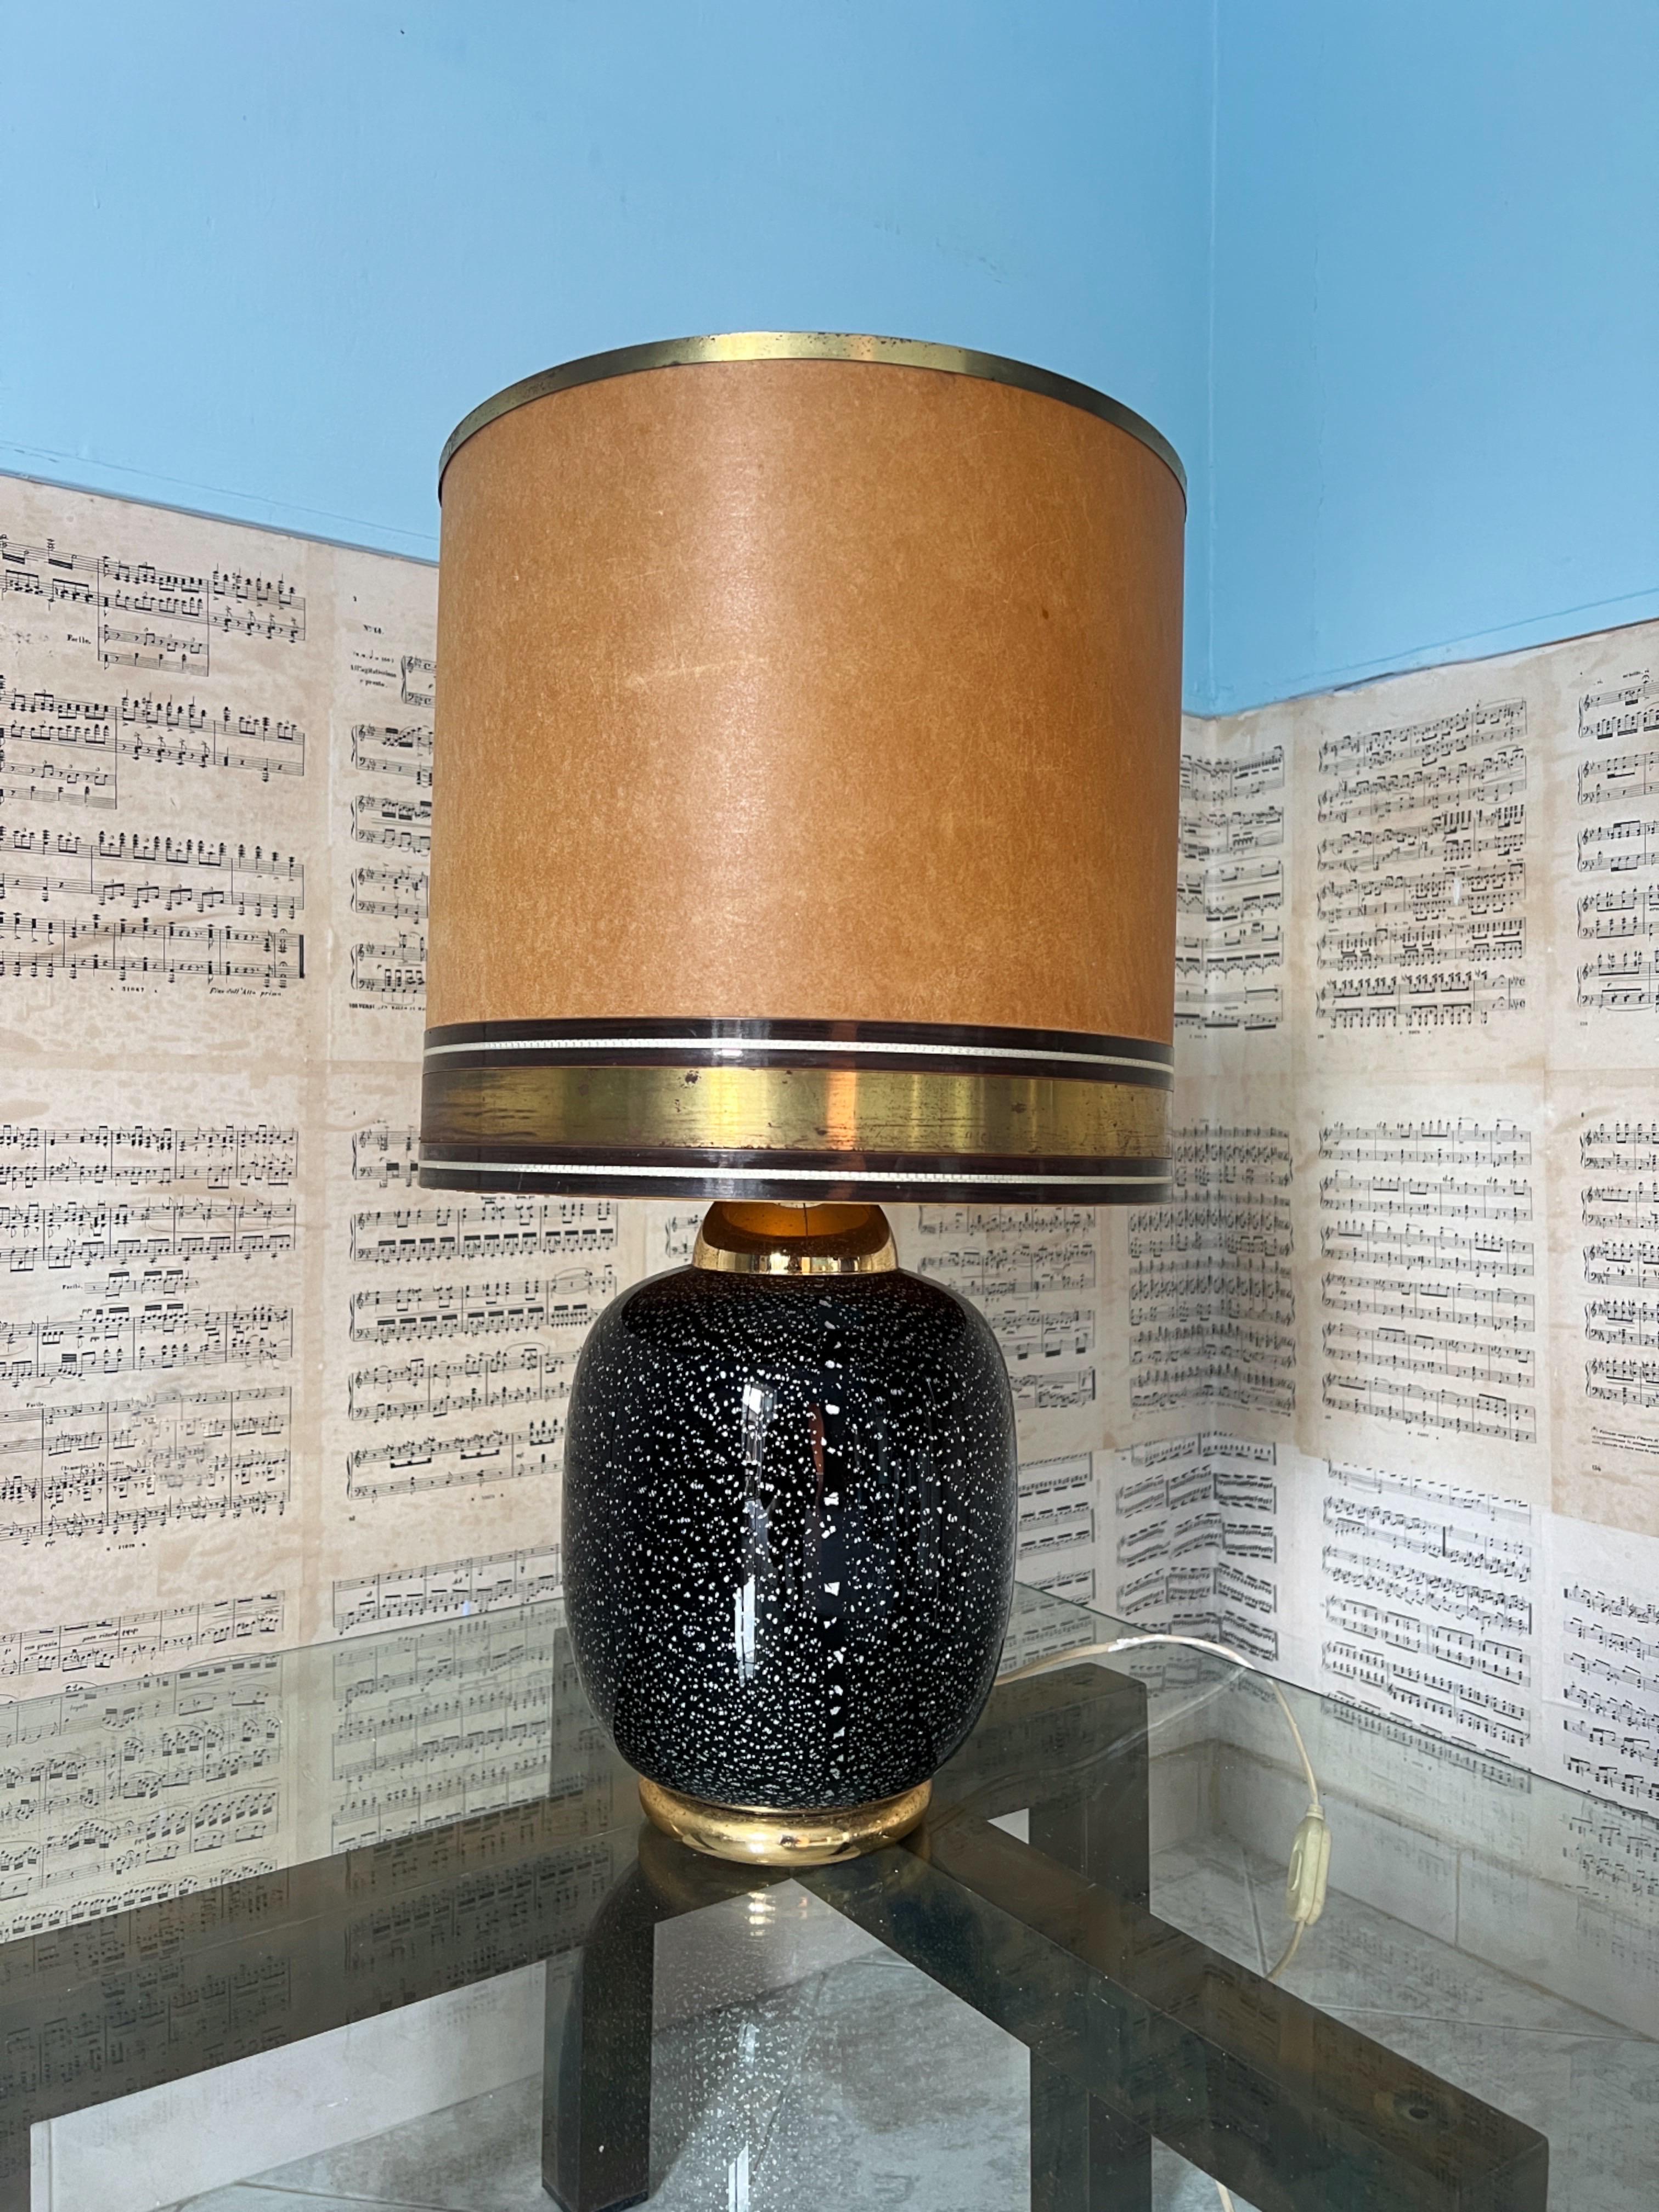 Voici une remarquable lampe de table en verre de Murano datant des années 1970. La base est composée de verre Murano d'un violet foncé riche, orné de mouchetures argentées. En regardant de près, on a l'impression de regarder dans l'espace. Associée